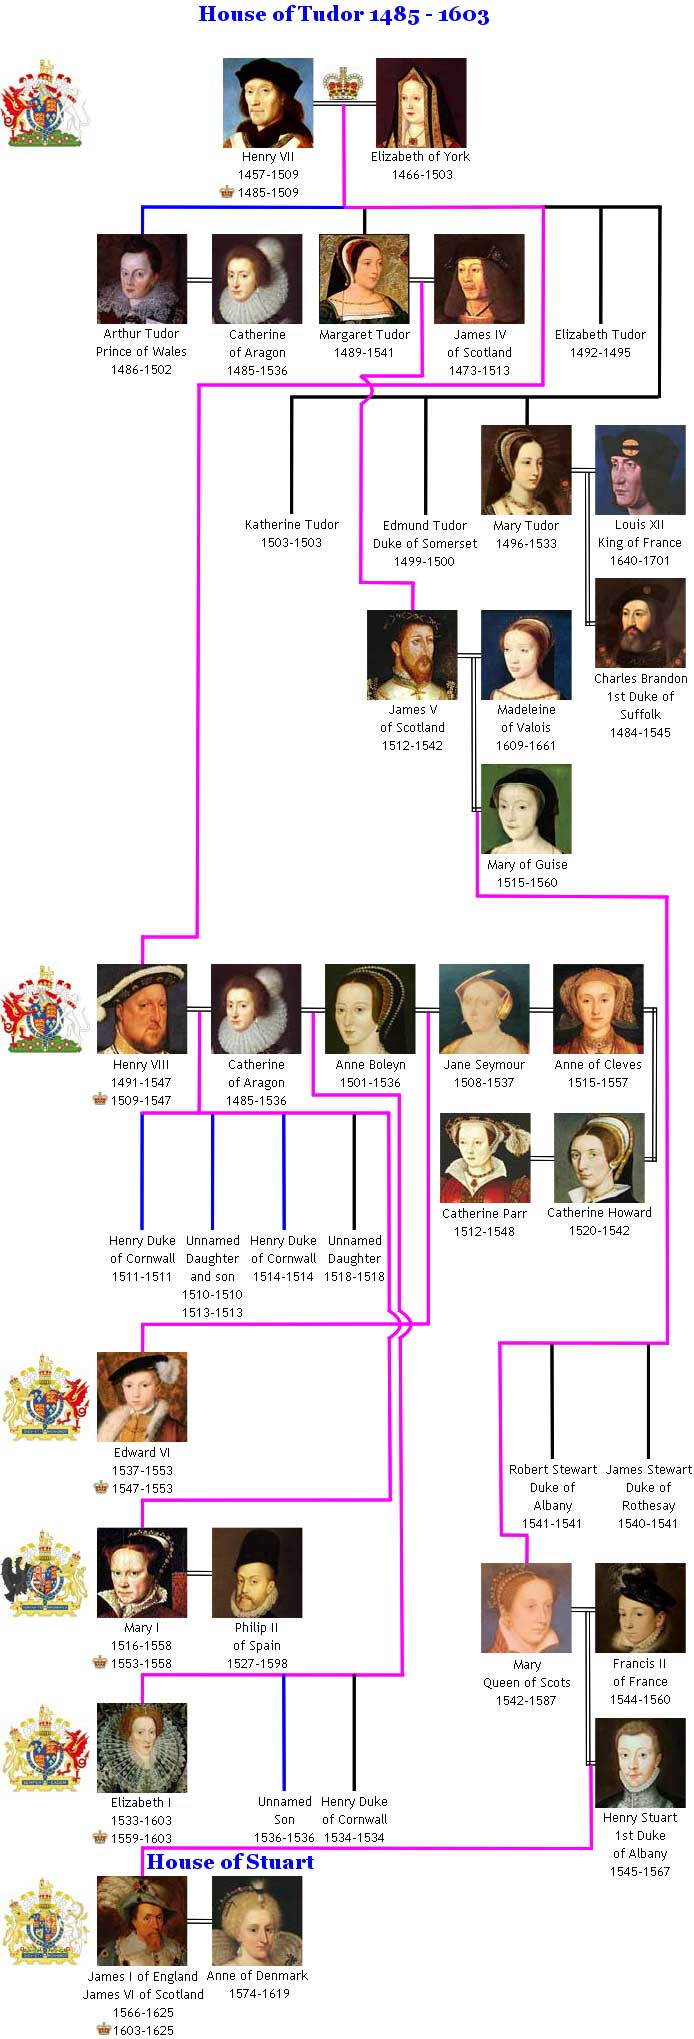 House of Tudor Royal Family Tree